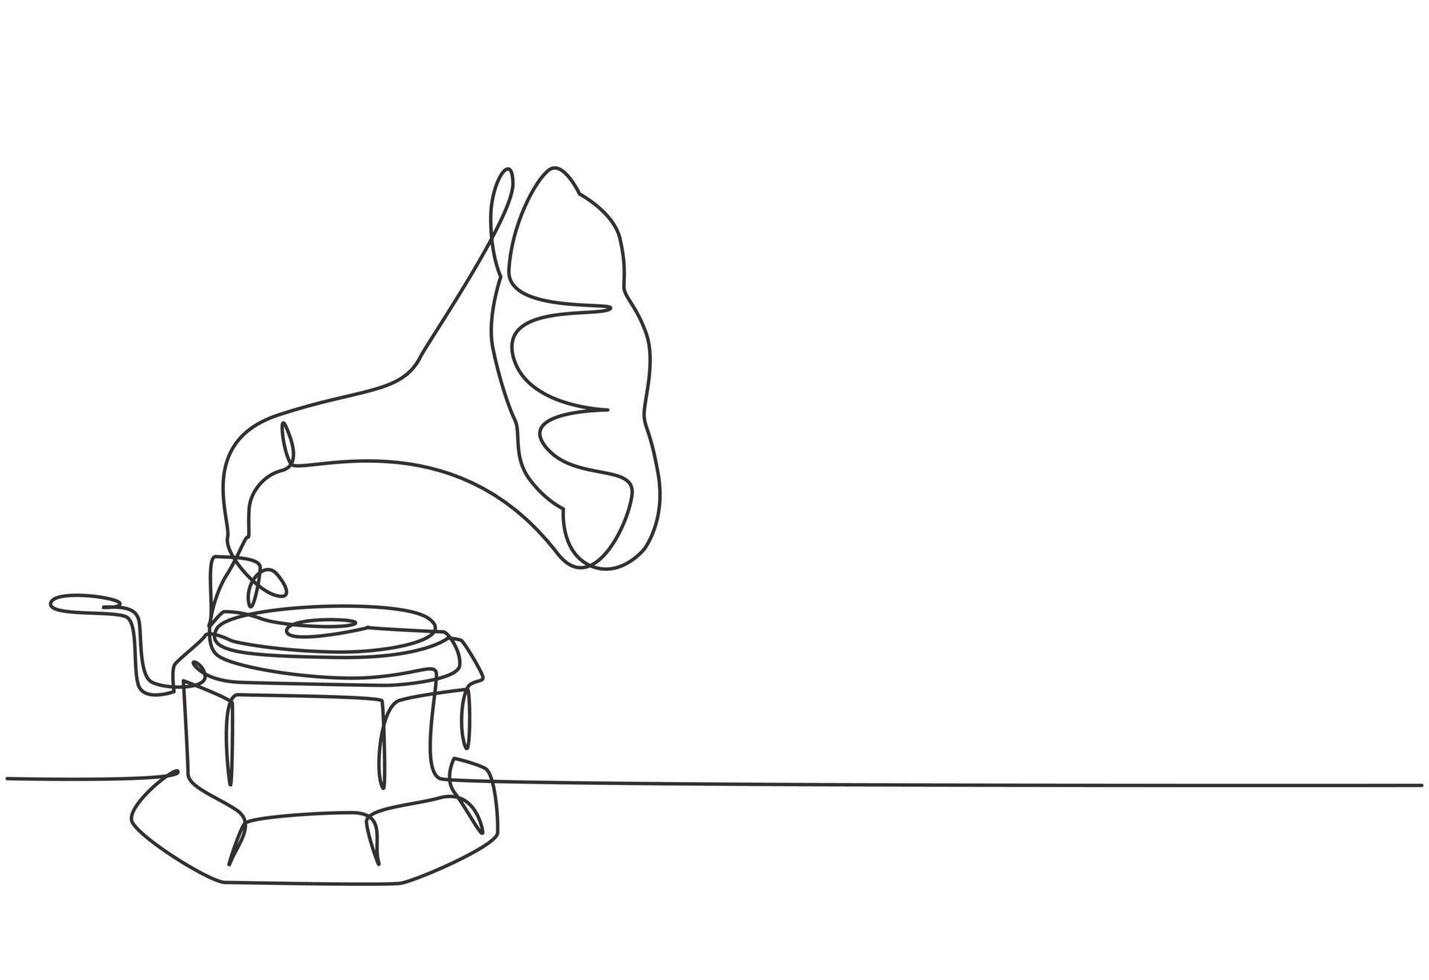 disegno a linea continua di un vecchio grammofono in vinile analogico retrò con scatola da tavolo in legno. concetto di lettore musicale classico vintage nostalgico. strumento musicale una linea disegnare disegno vettoriale illustrazione